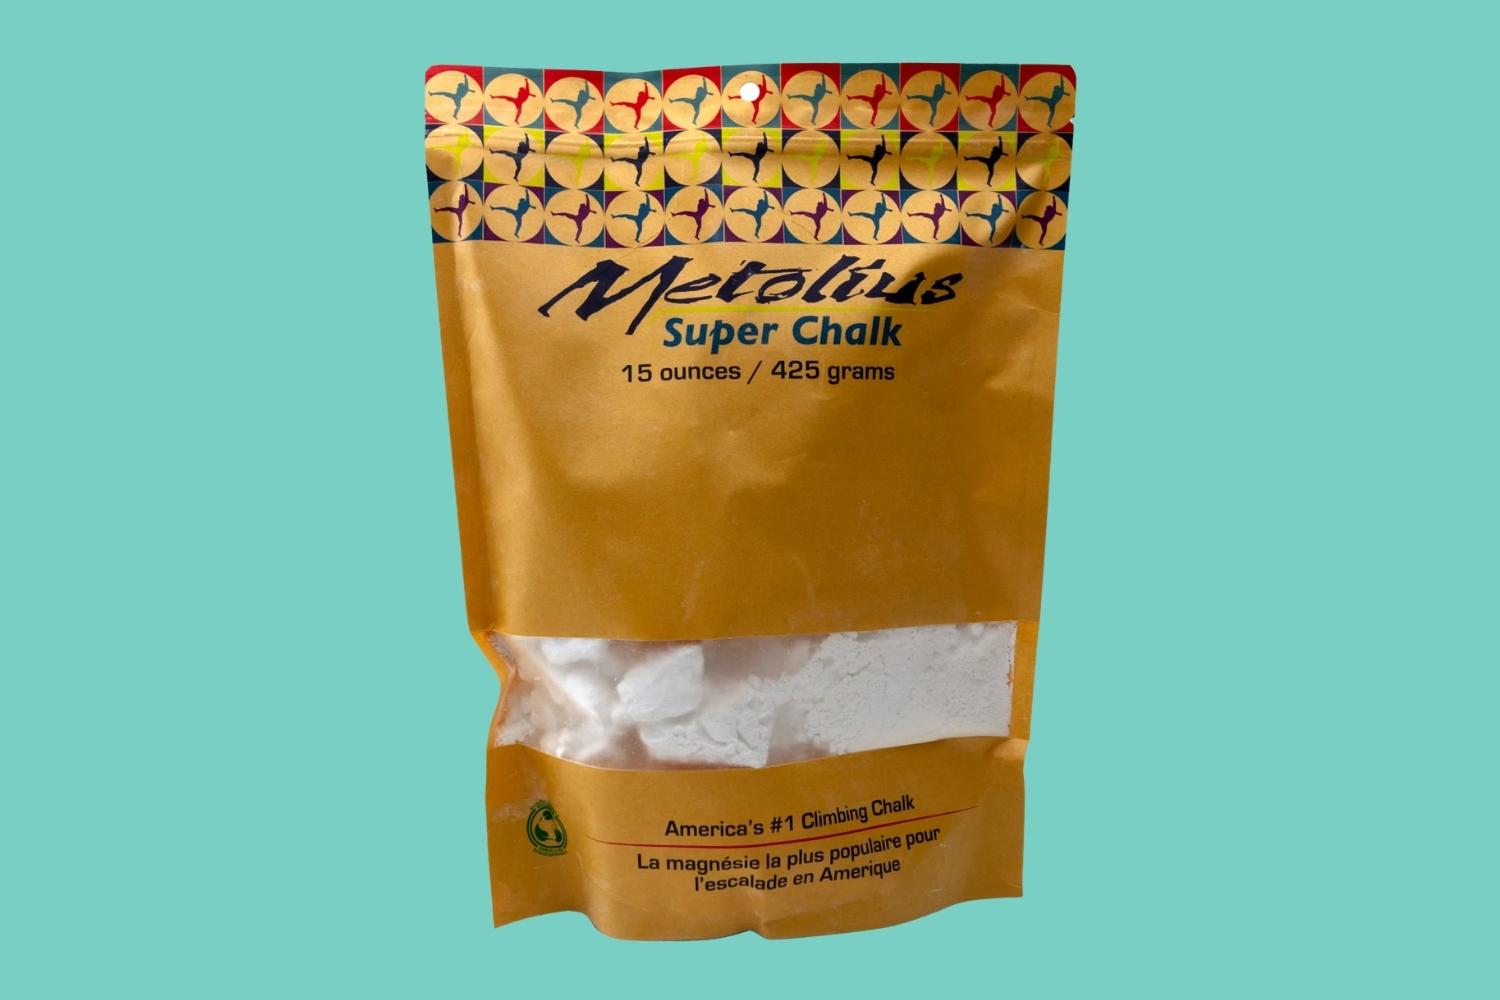 Metolius Super Chalk review